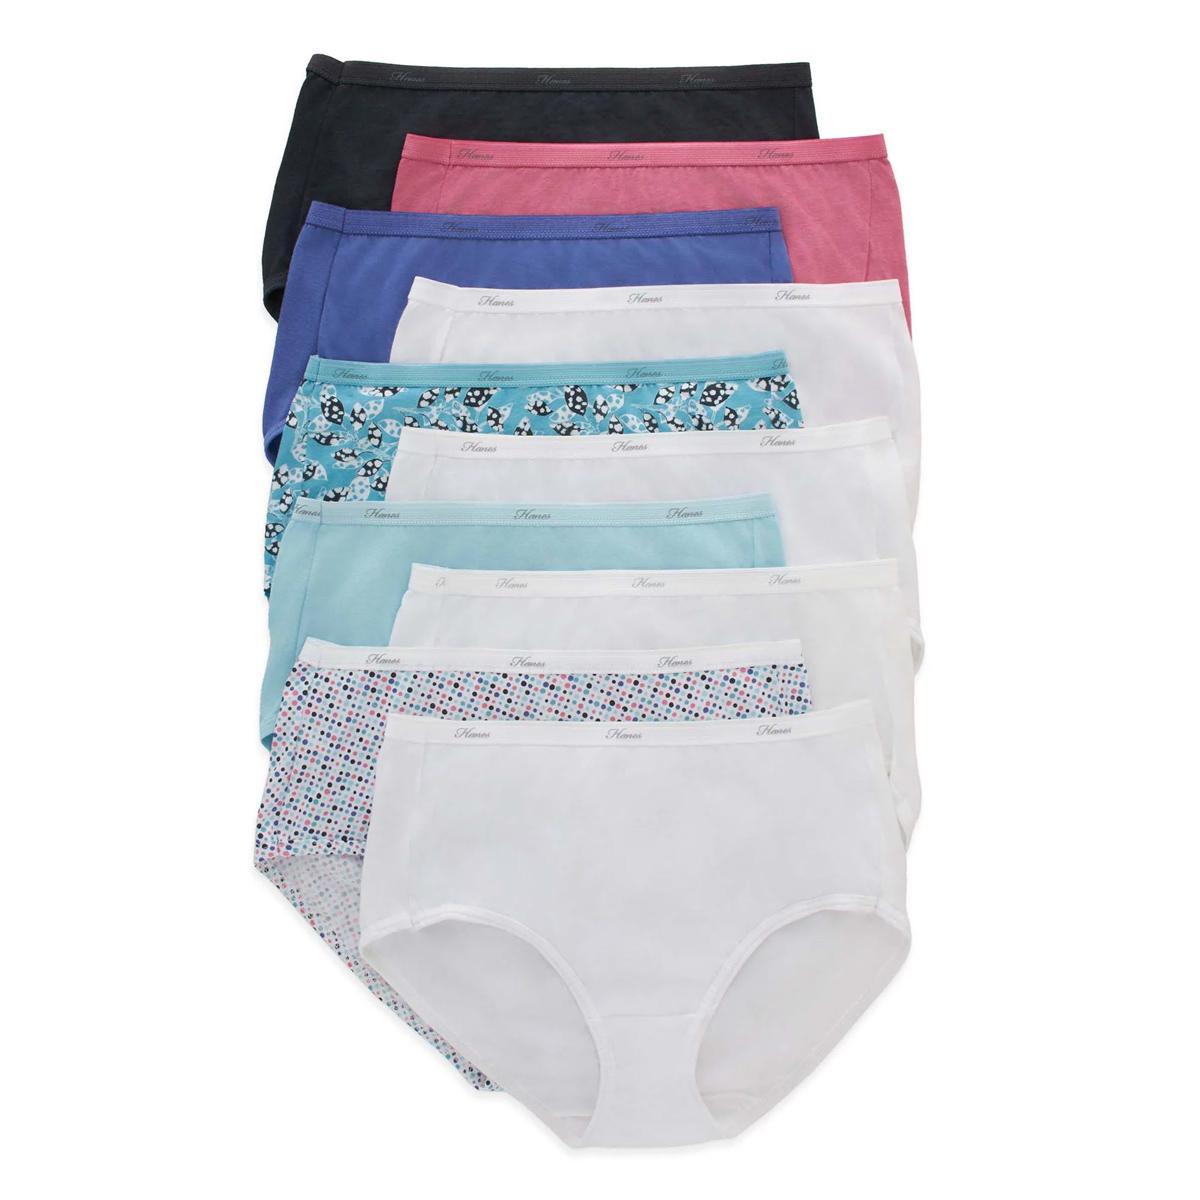 Hanes Womens Cotton Brief Underwear 10 Pack for $11.97